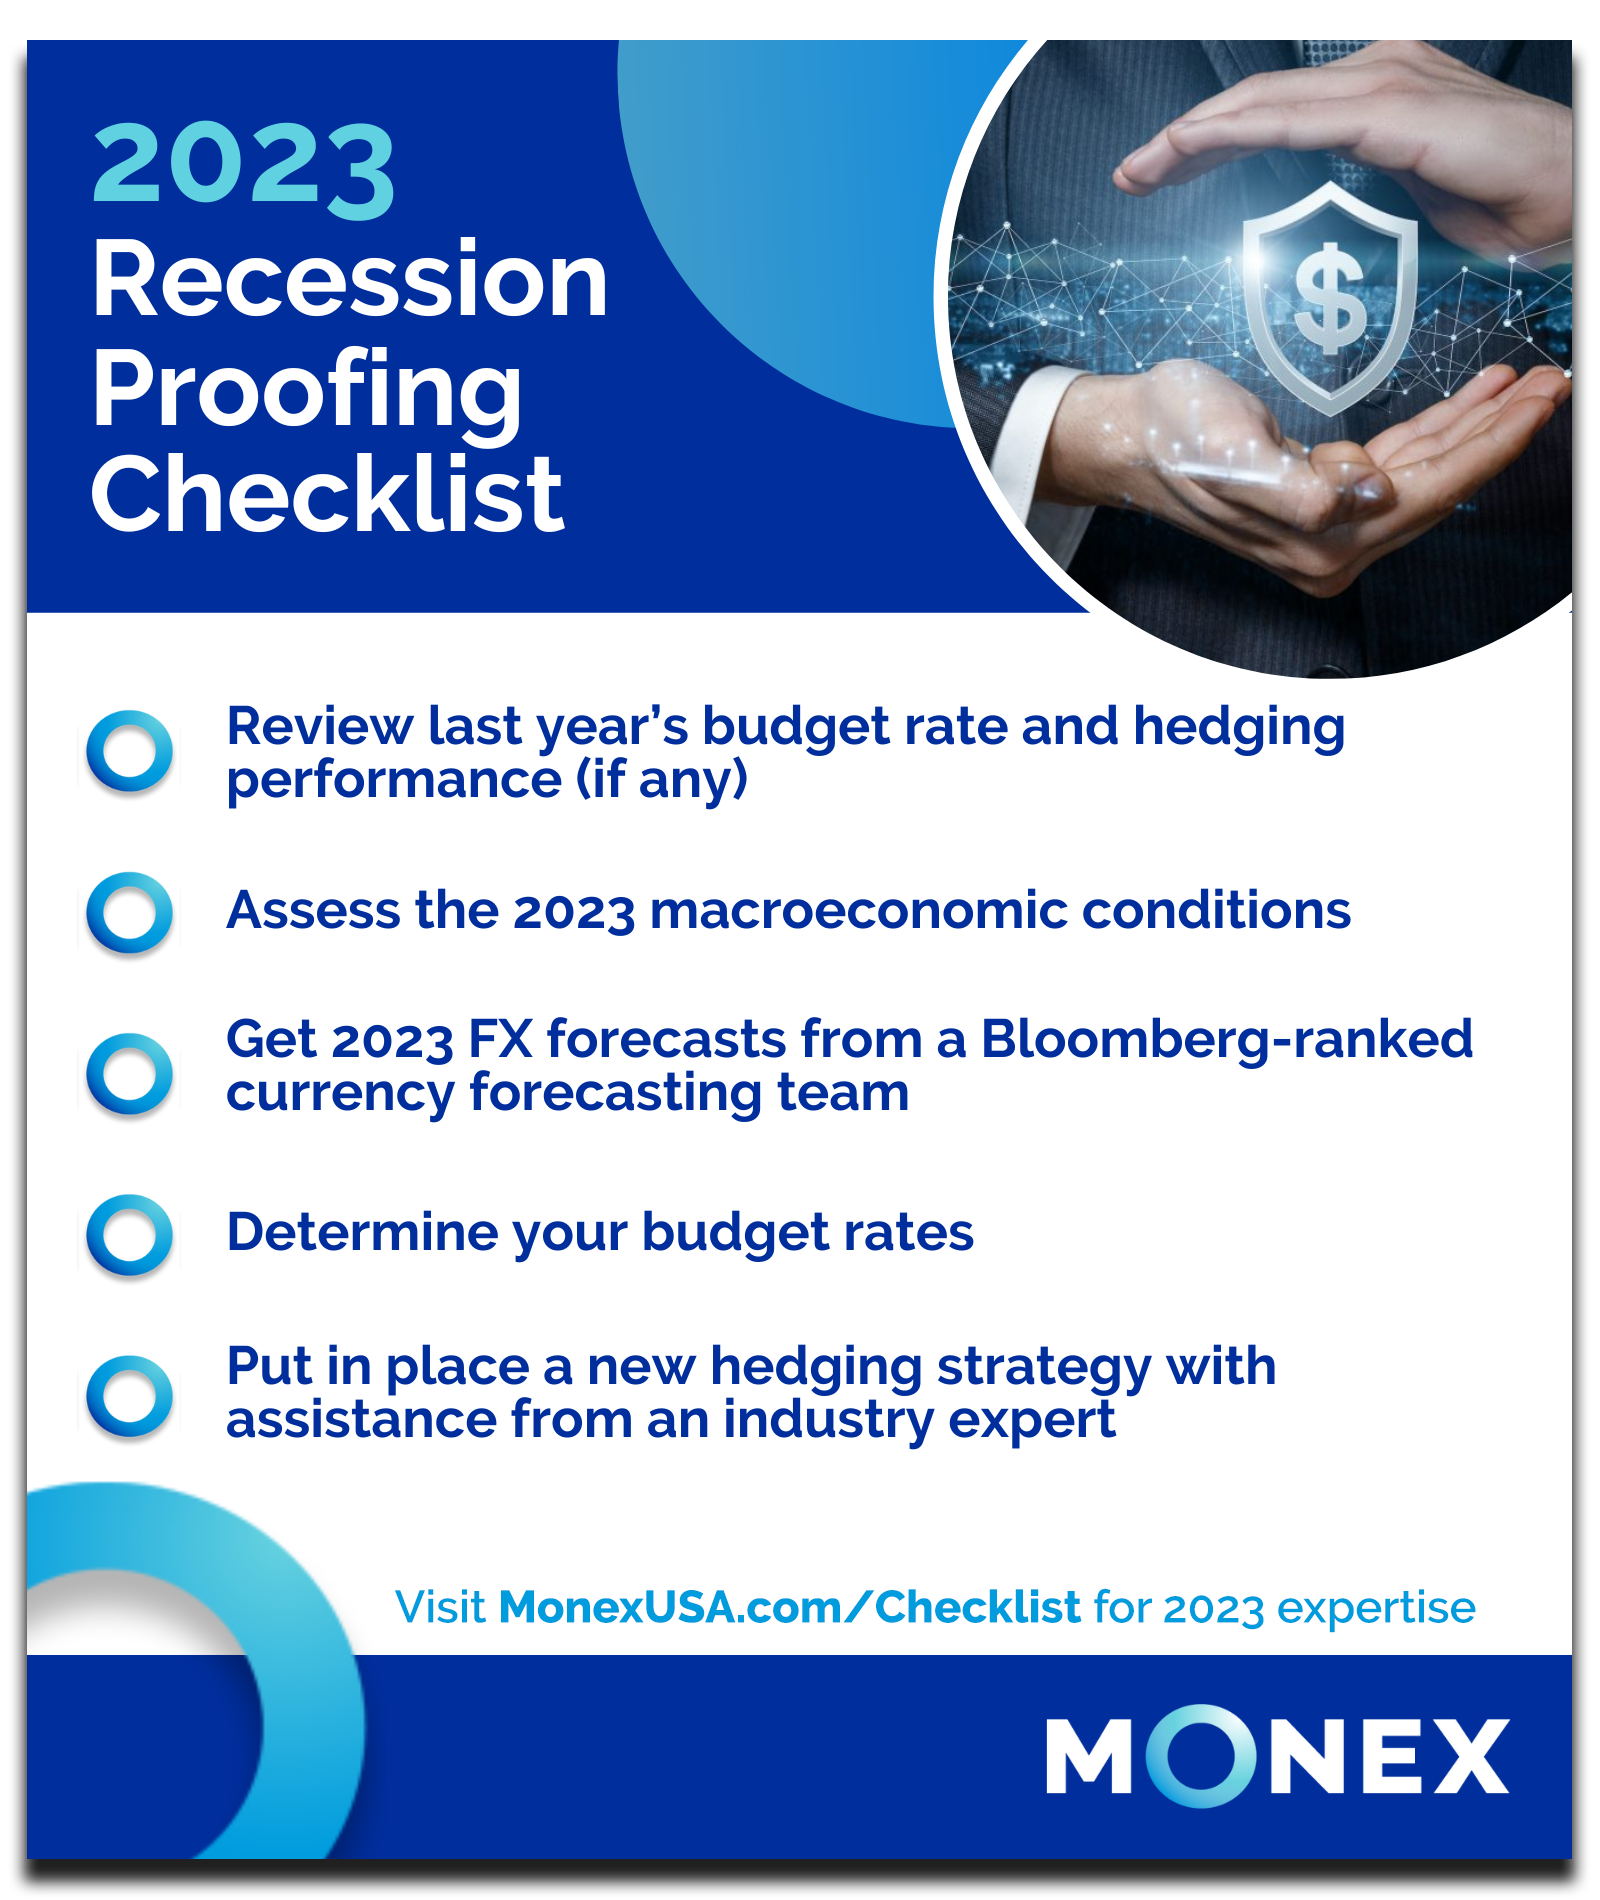 2023 Recession Proofing Checklist